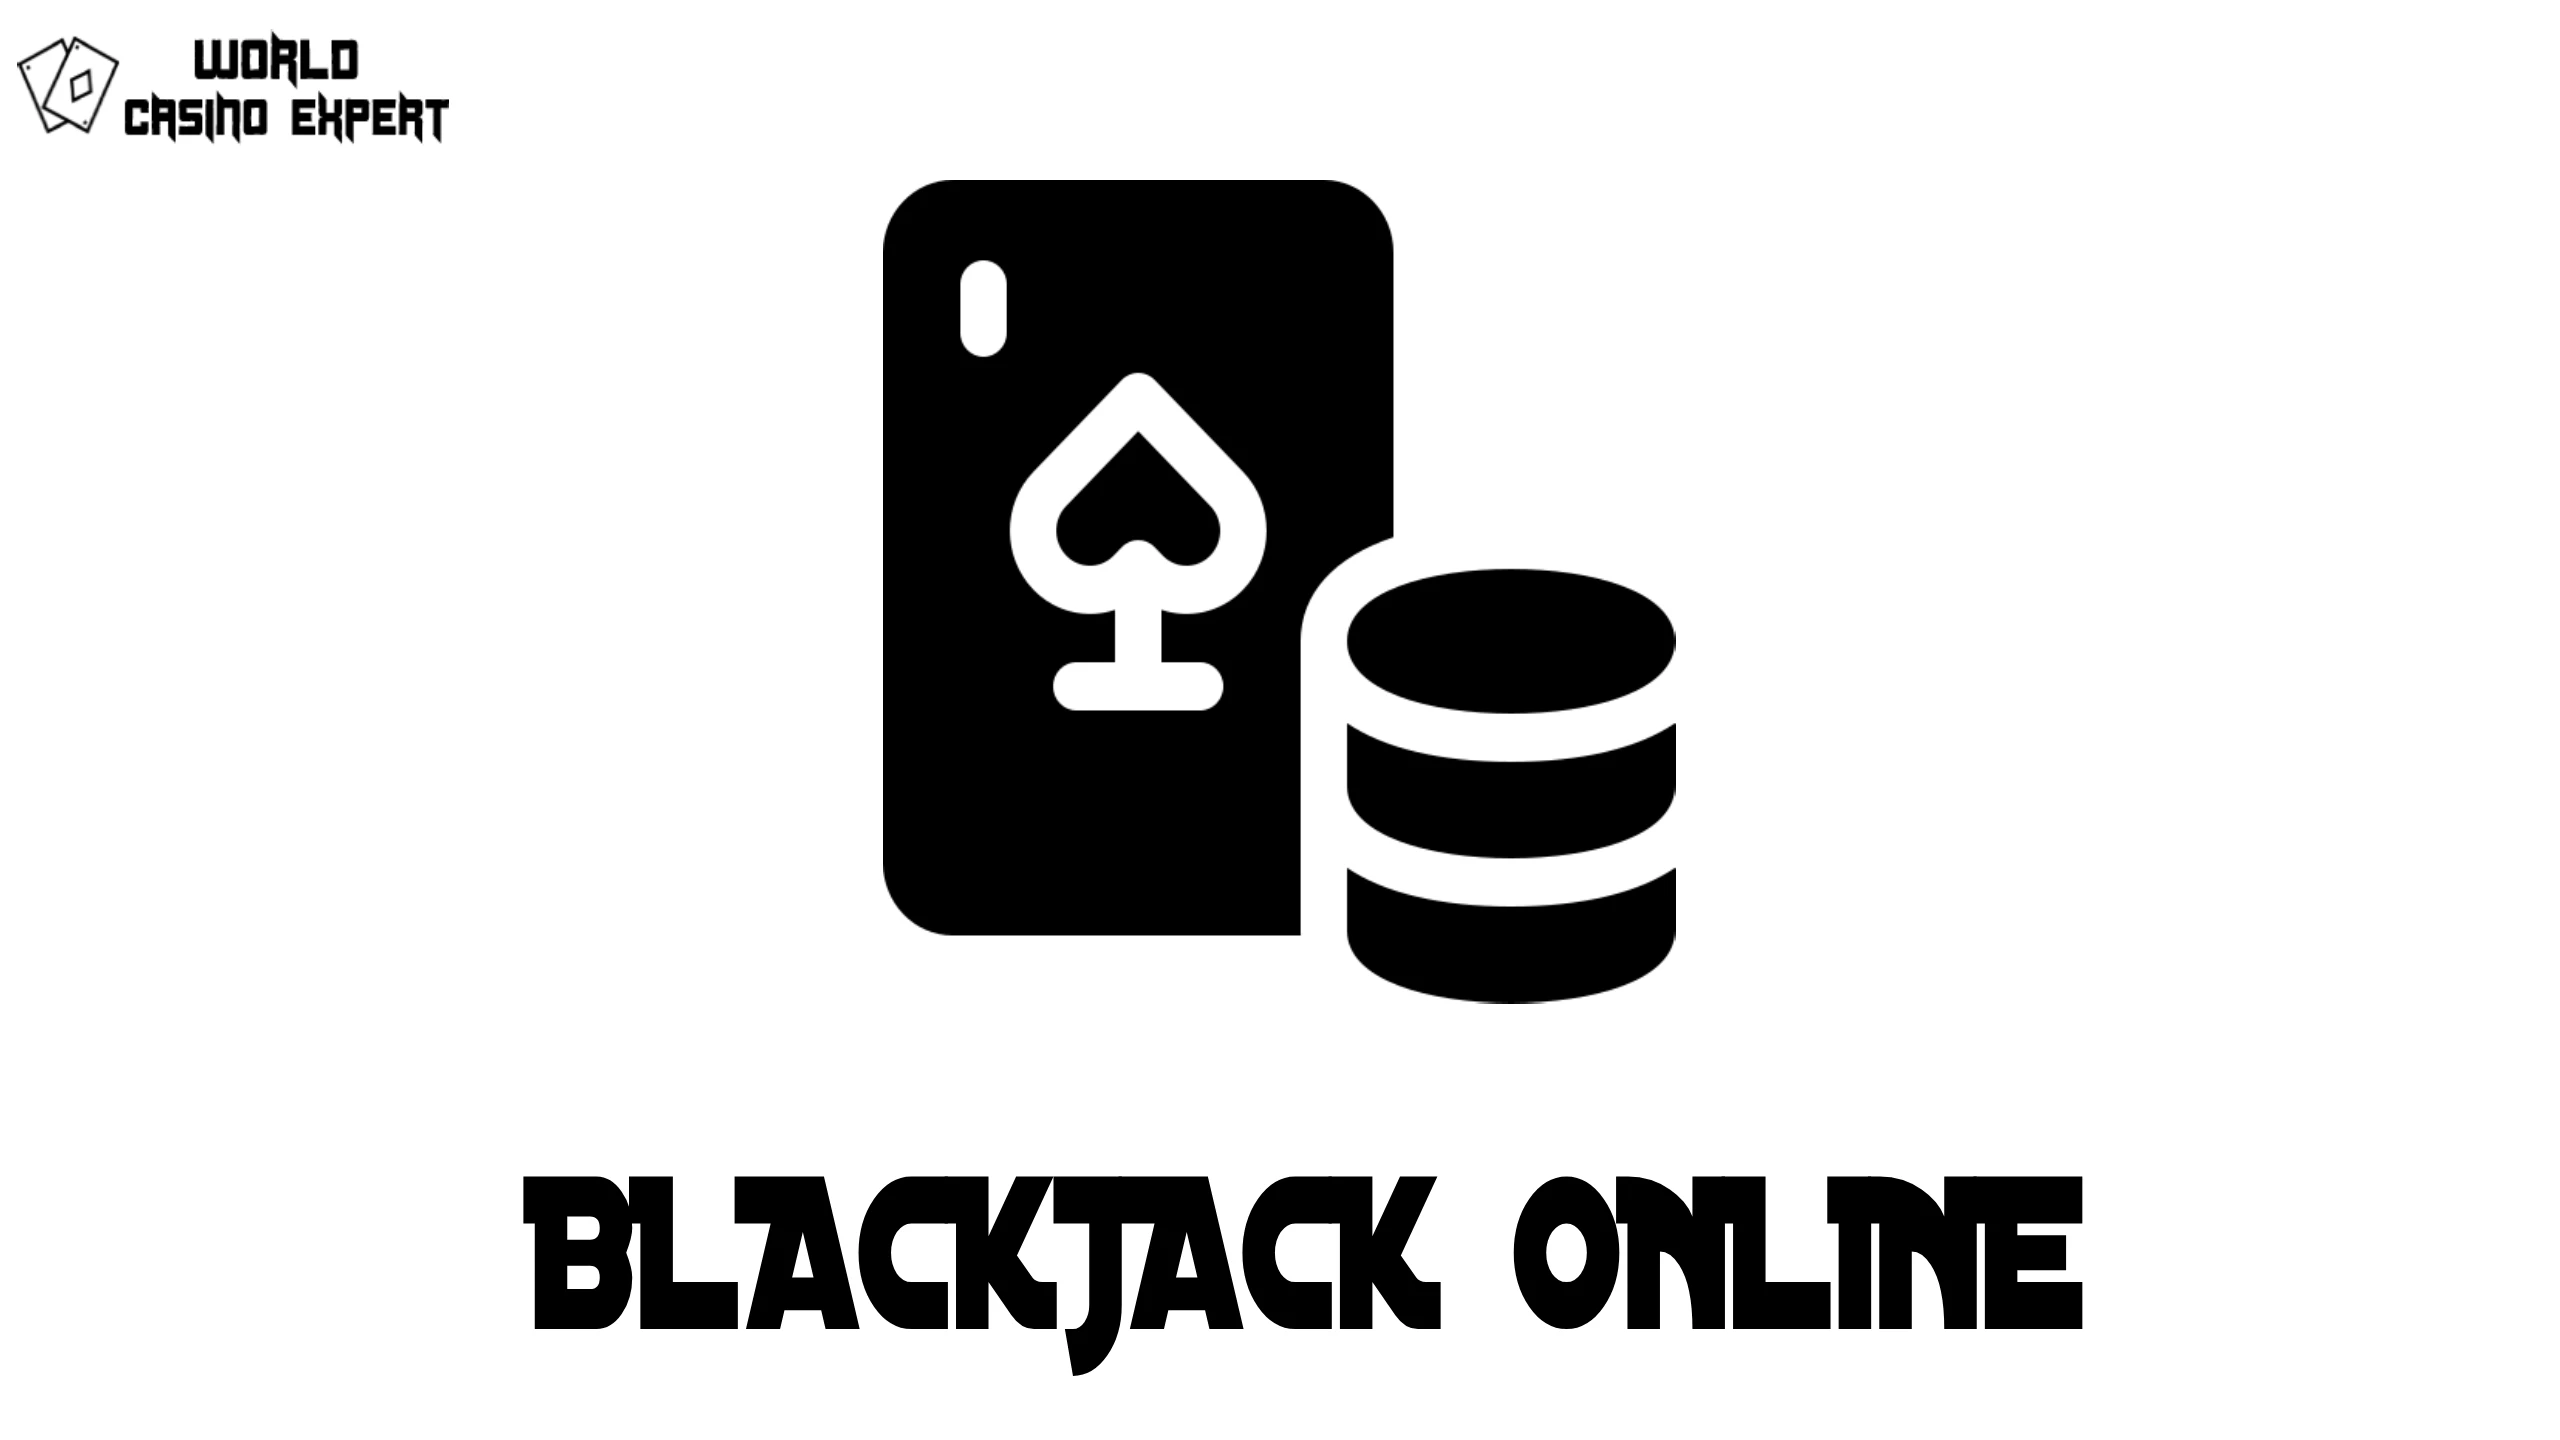 BlackJack Online For Real Cash | World Casino Expert